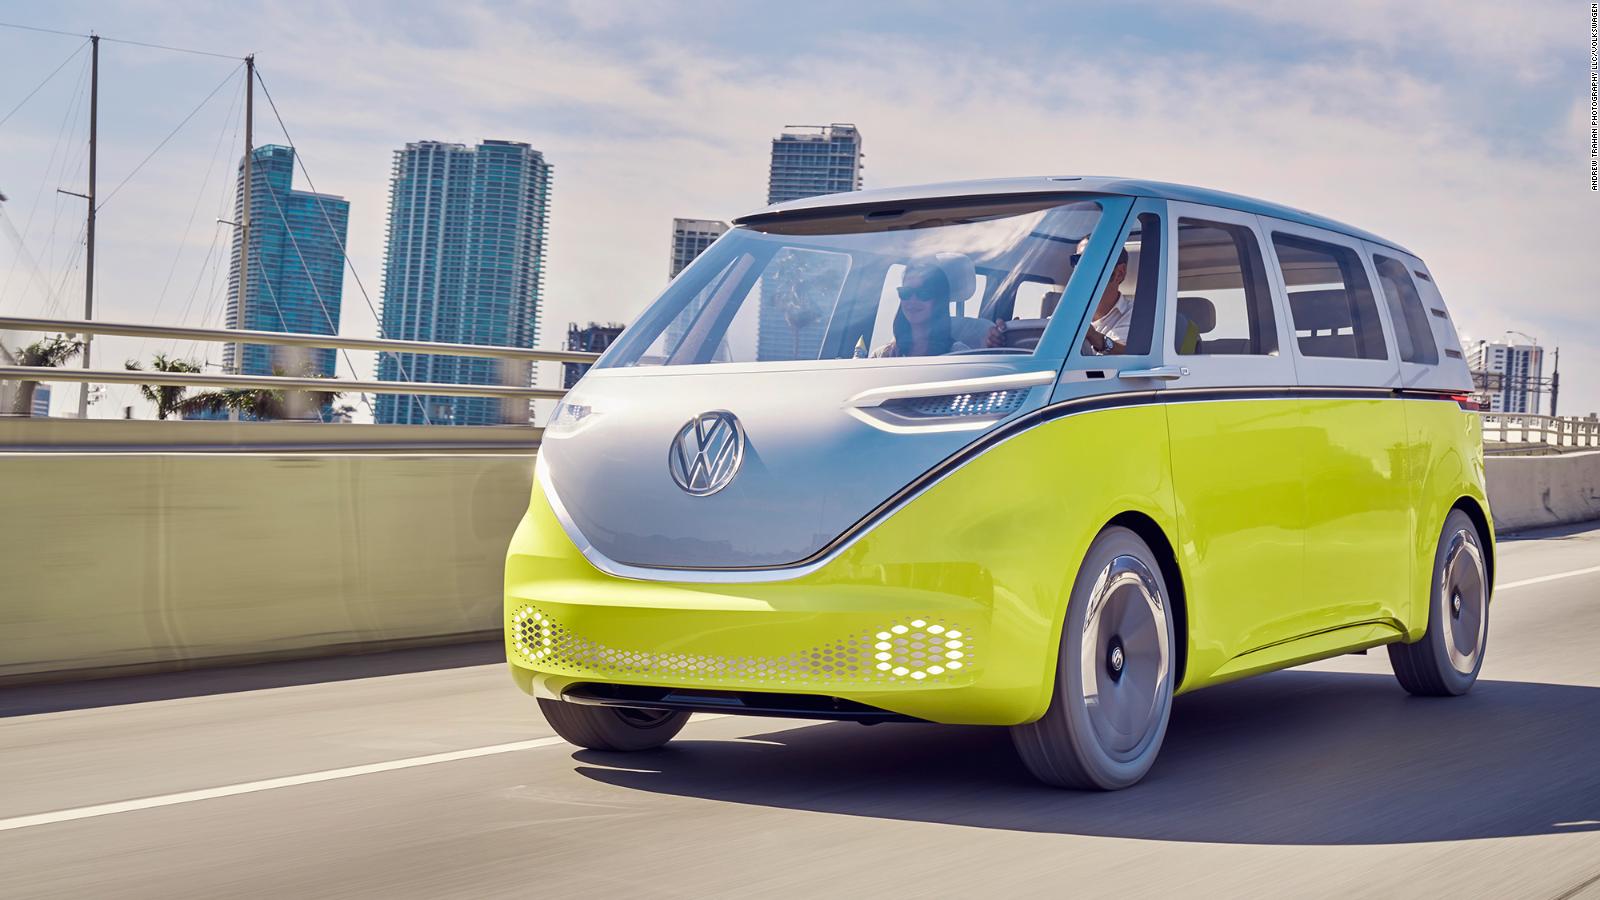 Equivalente violación mordaz Volkswagen quiere impulsar ventas con esta van eléctrica